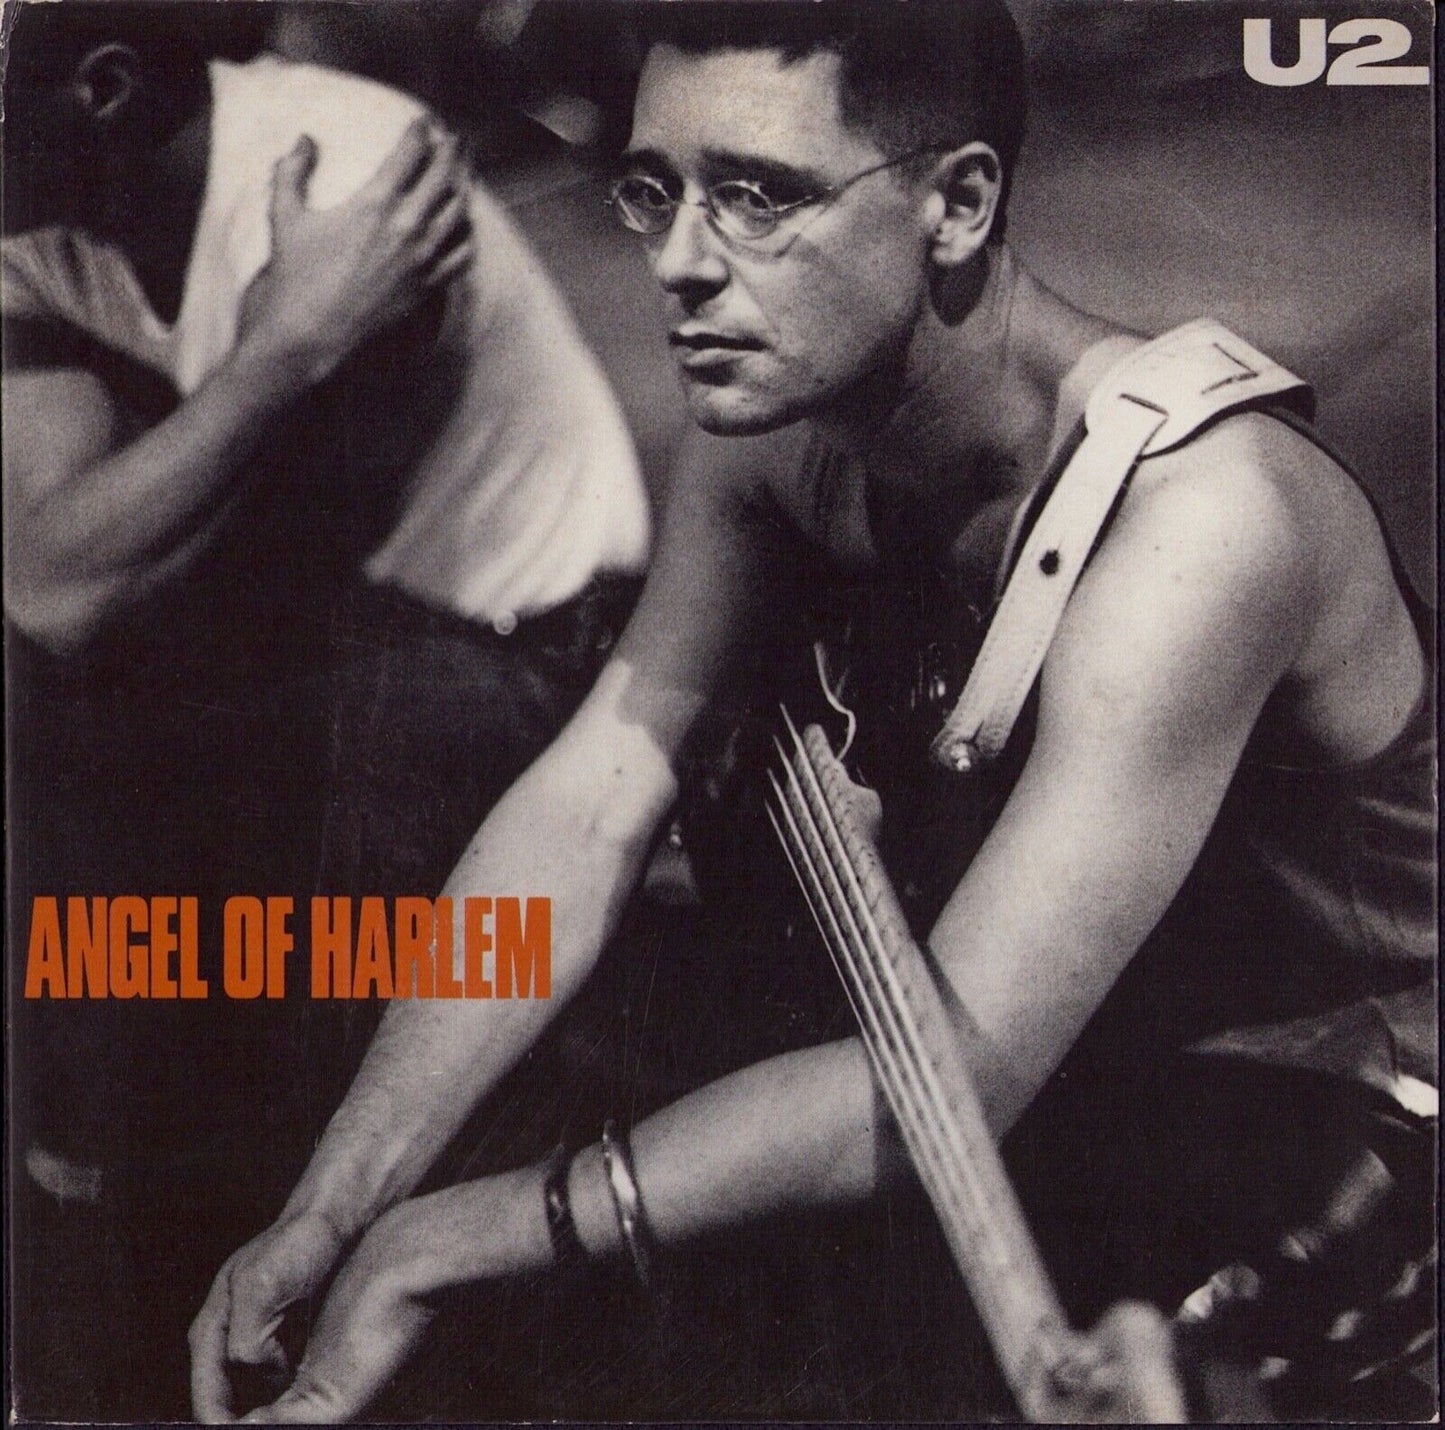 U2 - Angel of Harlem Vinyl 7" Single